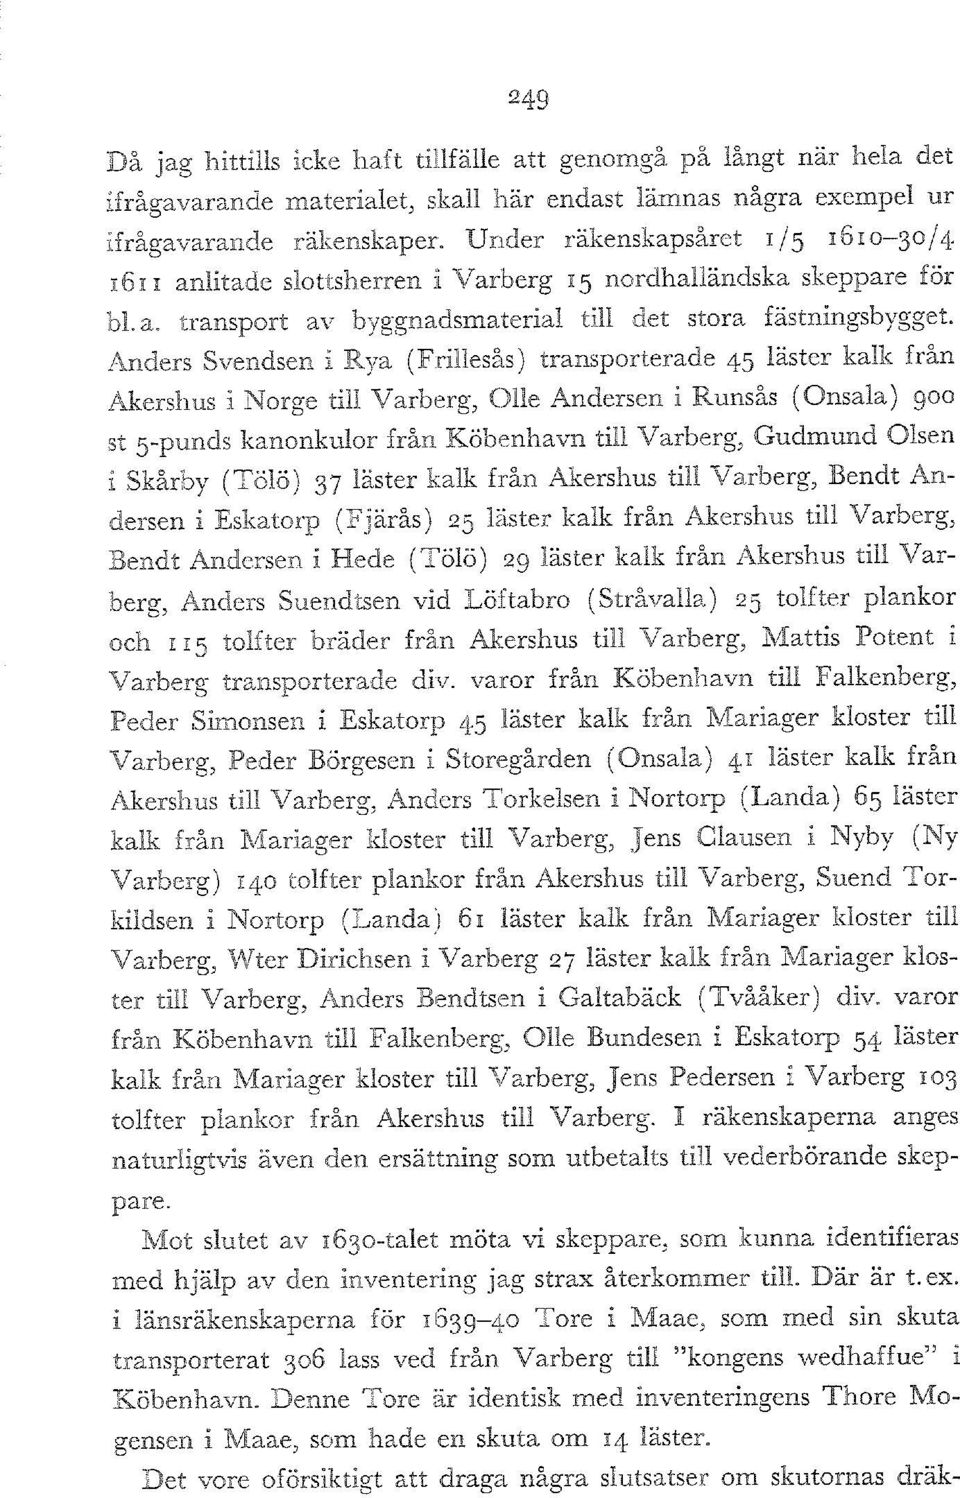 Anders Svendsen i Rya (Frillesås) transporterade 45 låster kalk från Akershus i Norge till Varberg, Olle Andersen i Runsås (Onsala) 900 st 5punds kanonkulor från Kobenhavn till Varberg, Gudmund Olsen